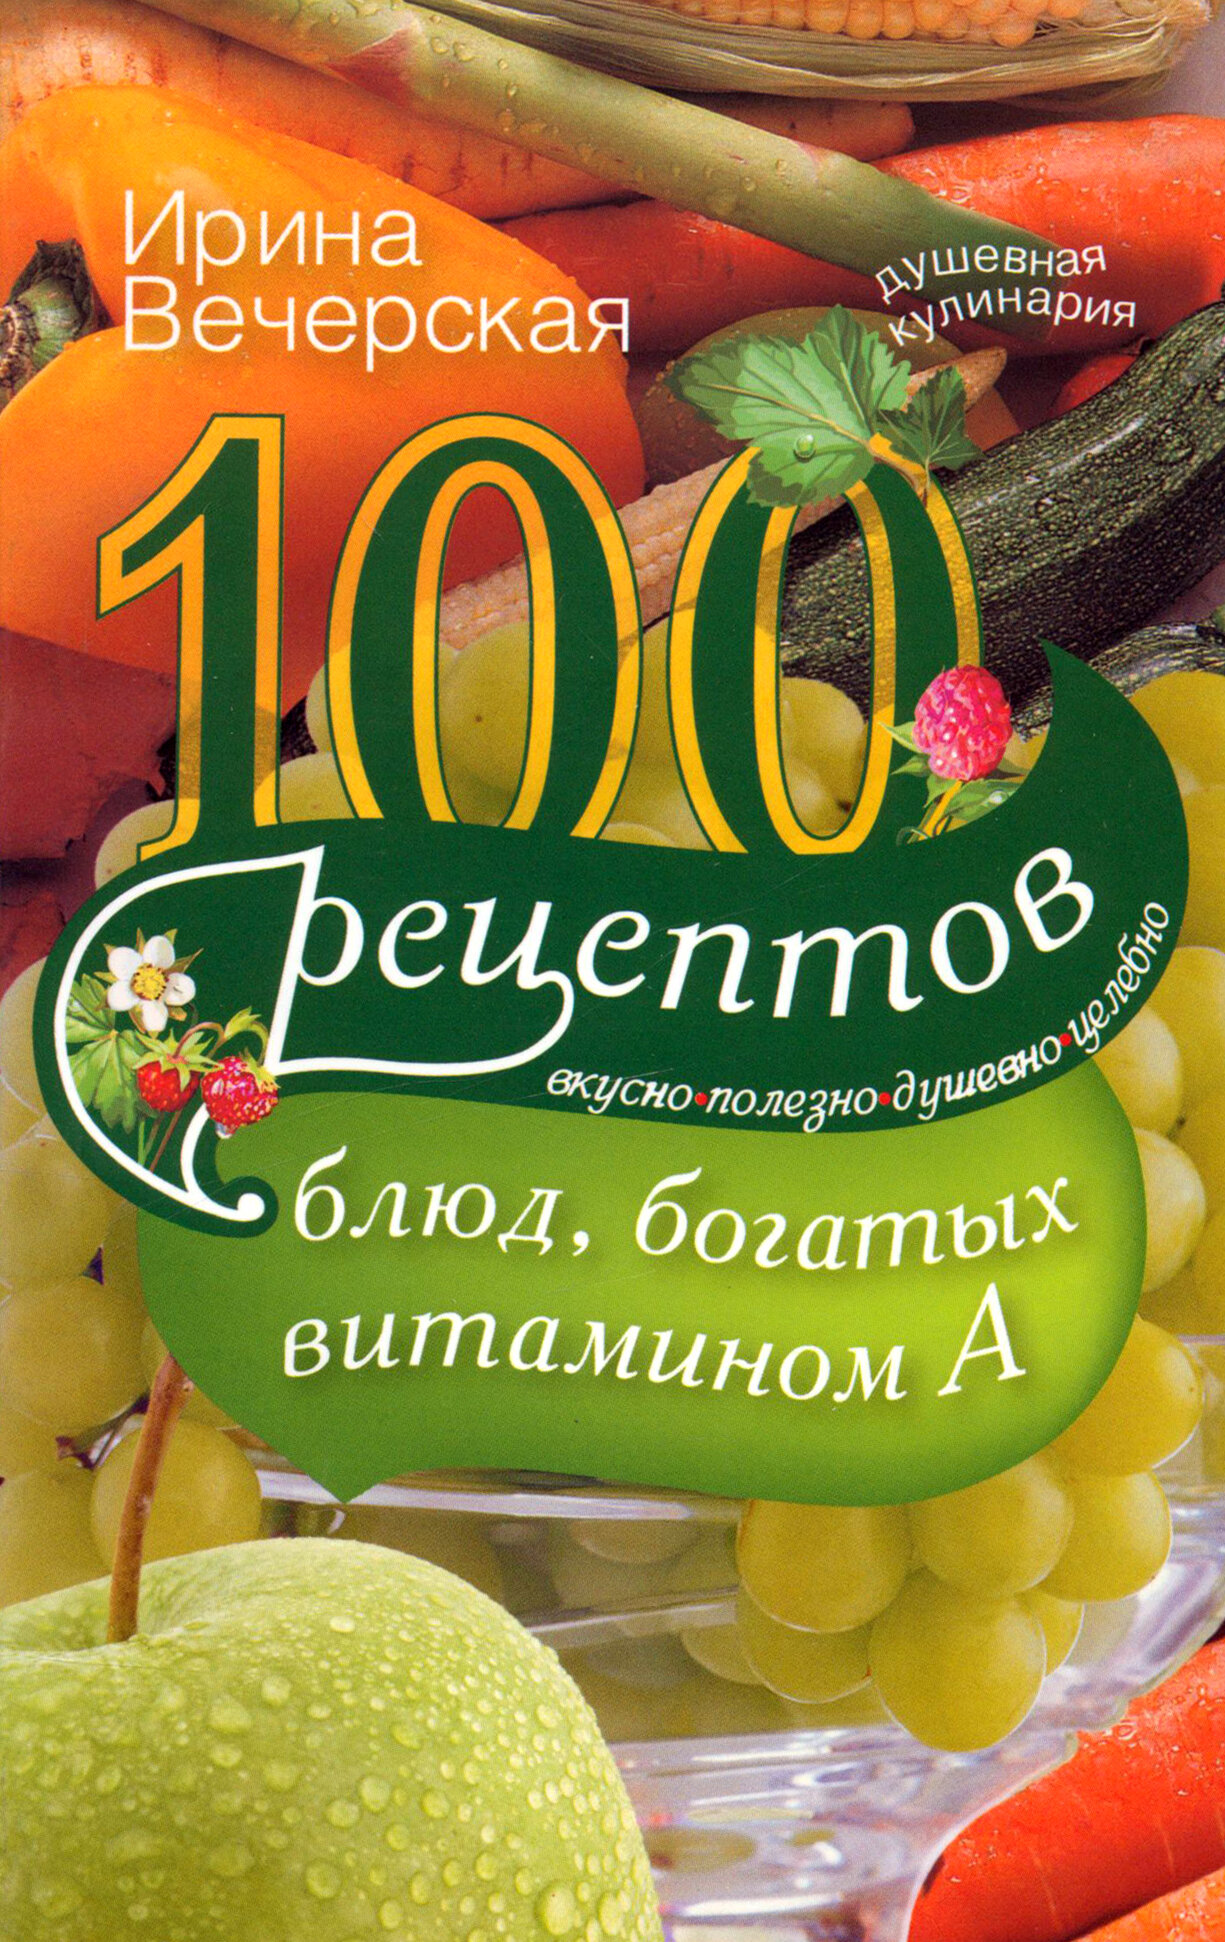 100 рецептов богатых витамином А. Вкусно, полезно, душевно, целебно - фото №3